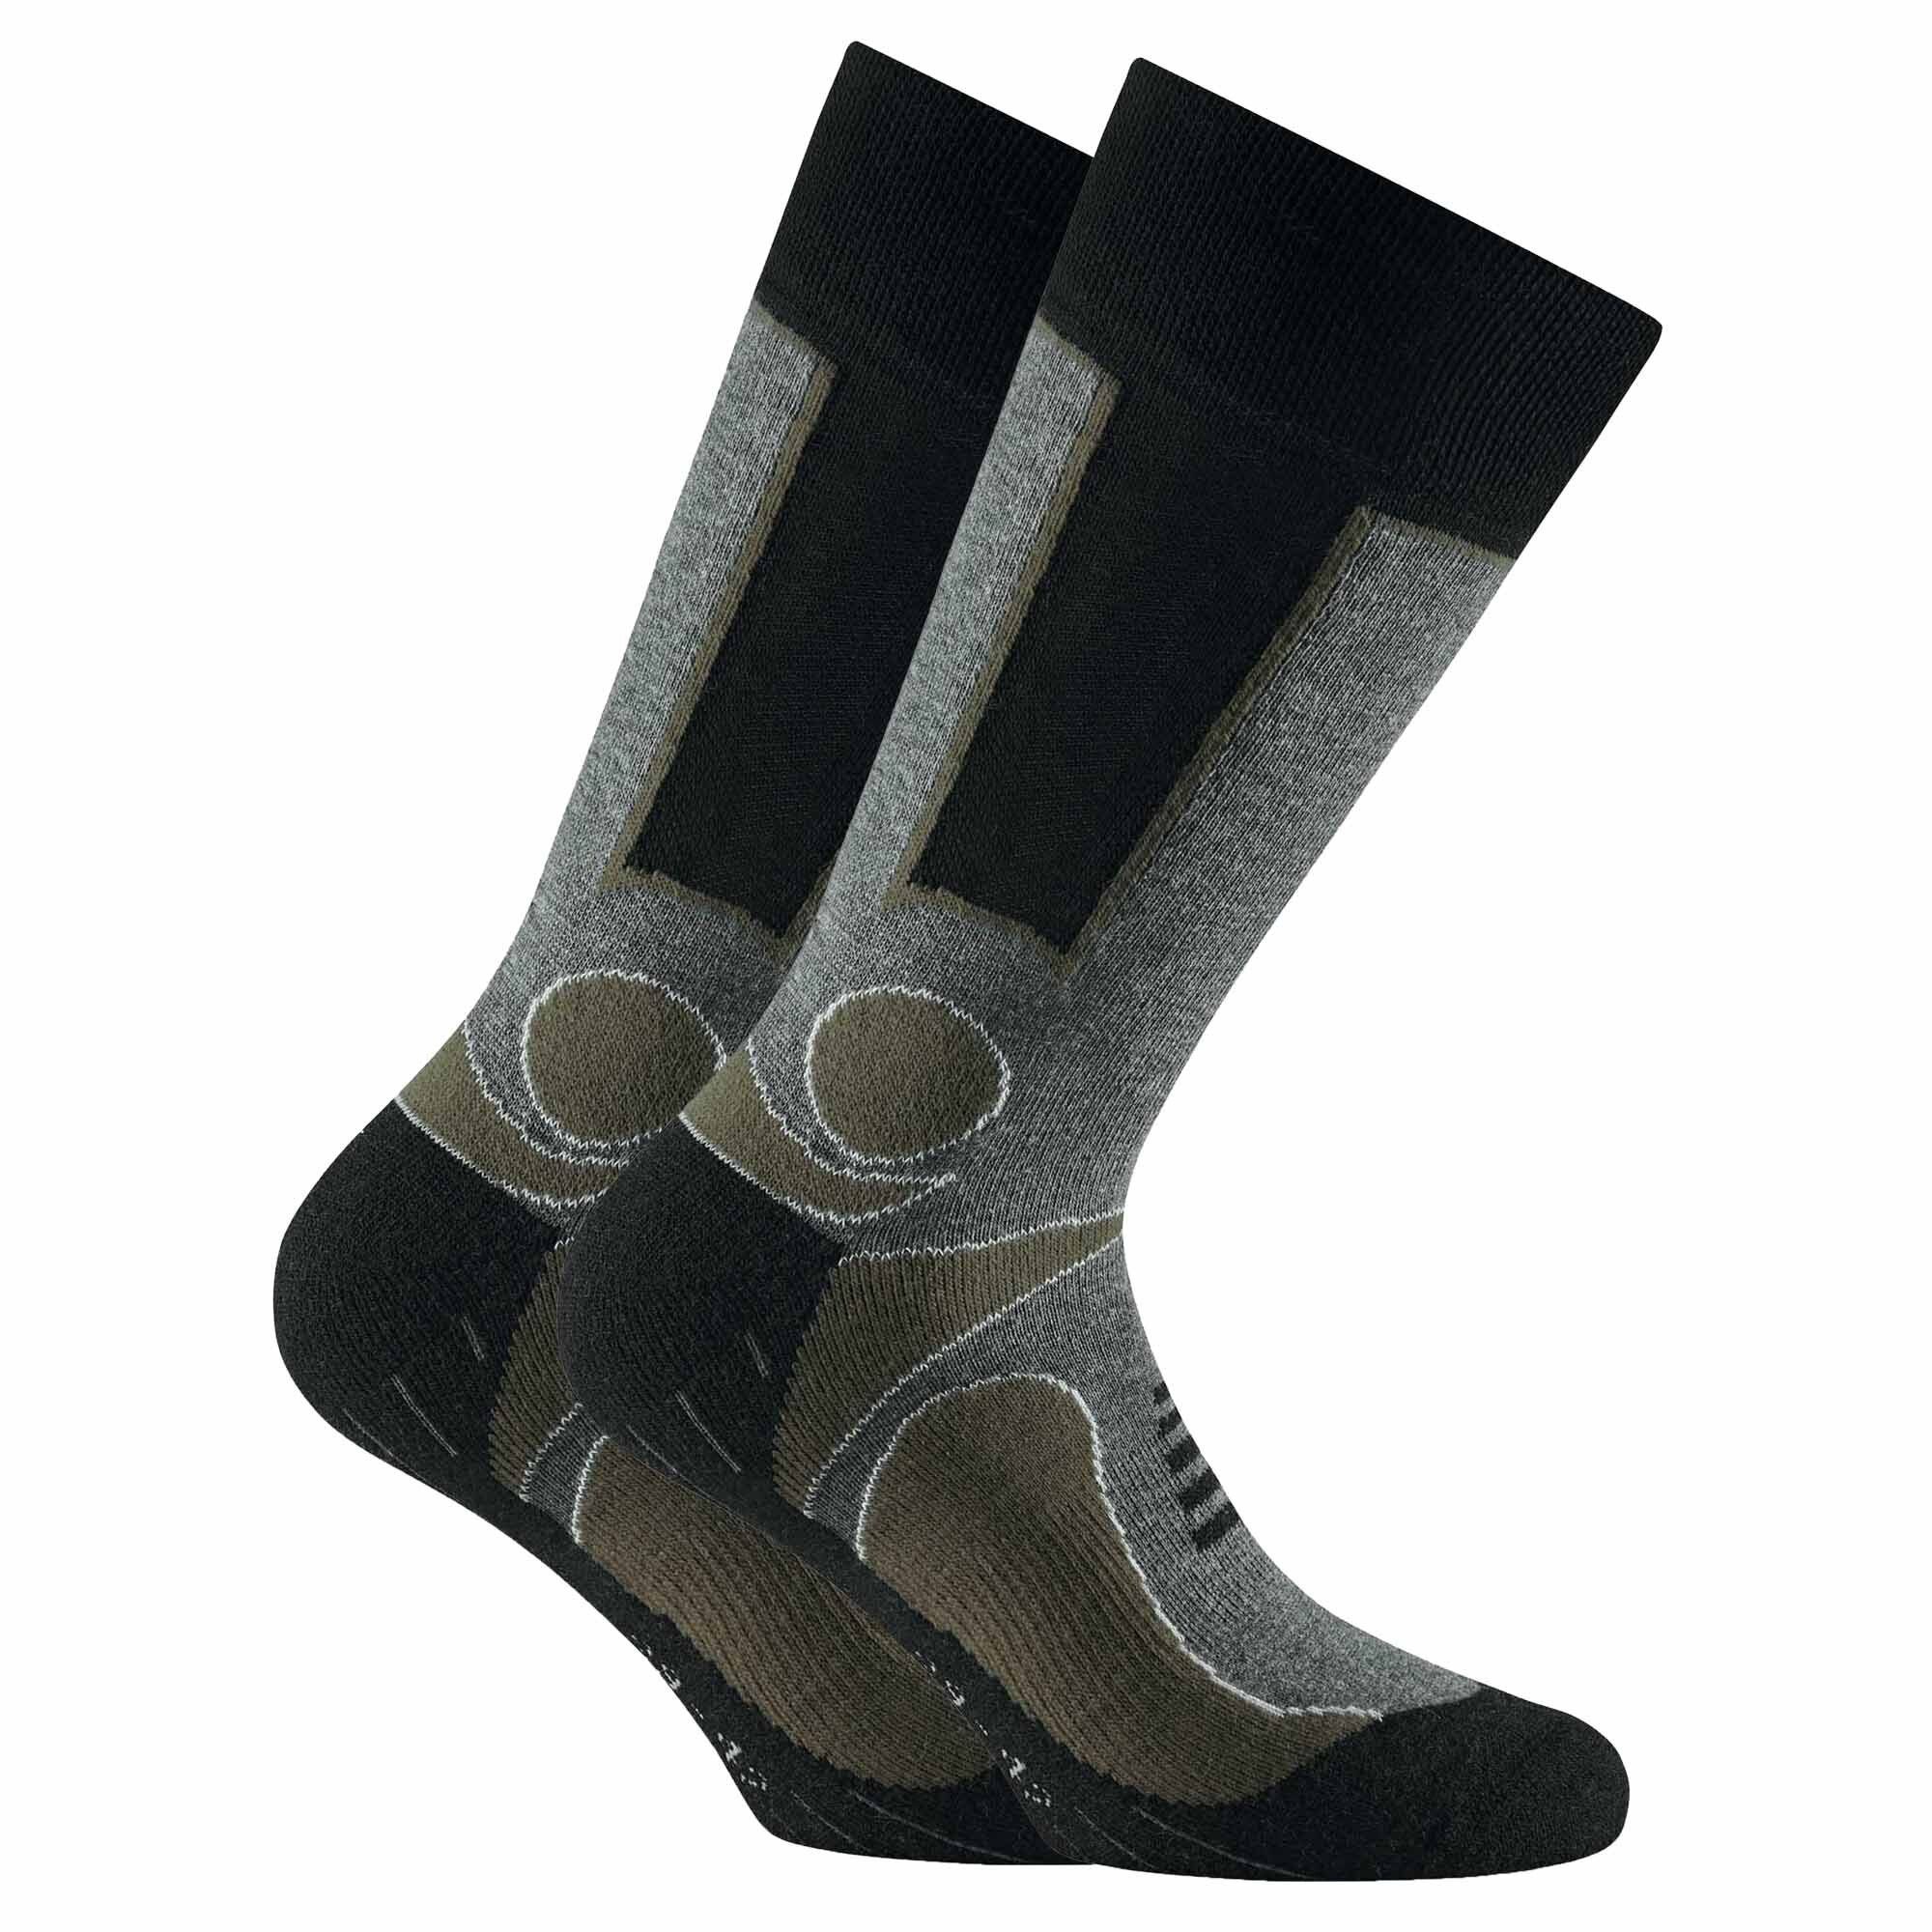 Rohner Socks Sportsocken Unisex Trekking 2er - Khaki Pack Outdoor Socken, Basic